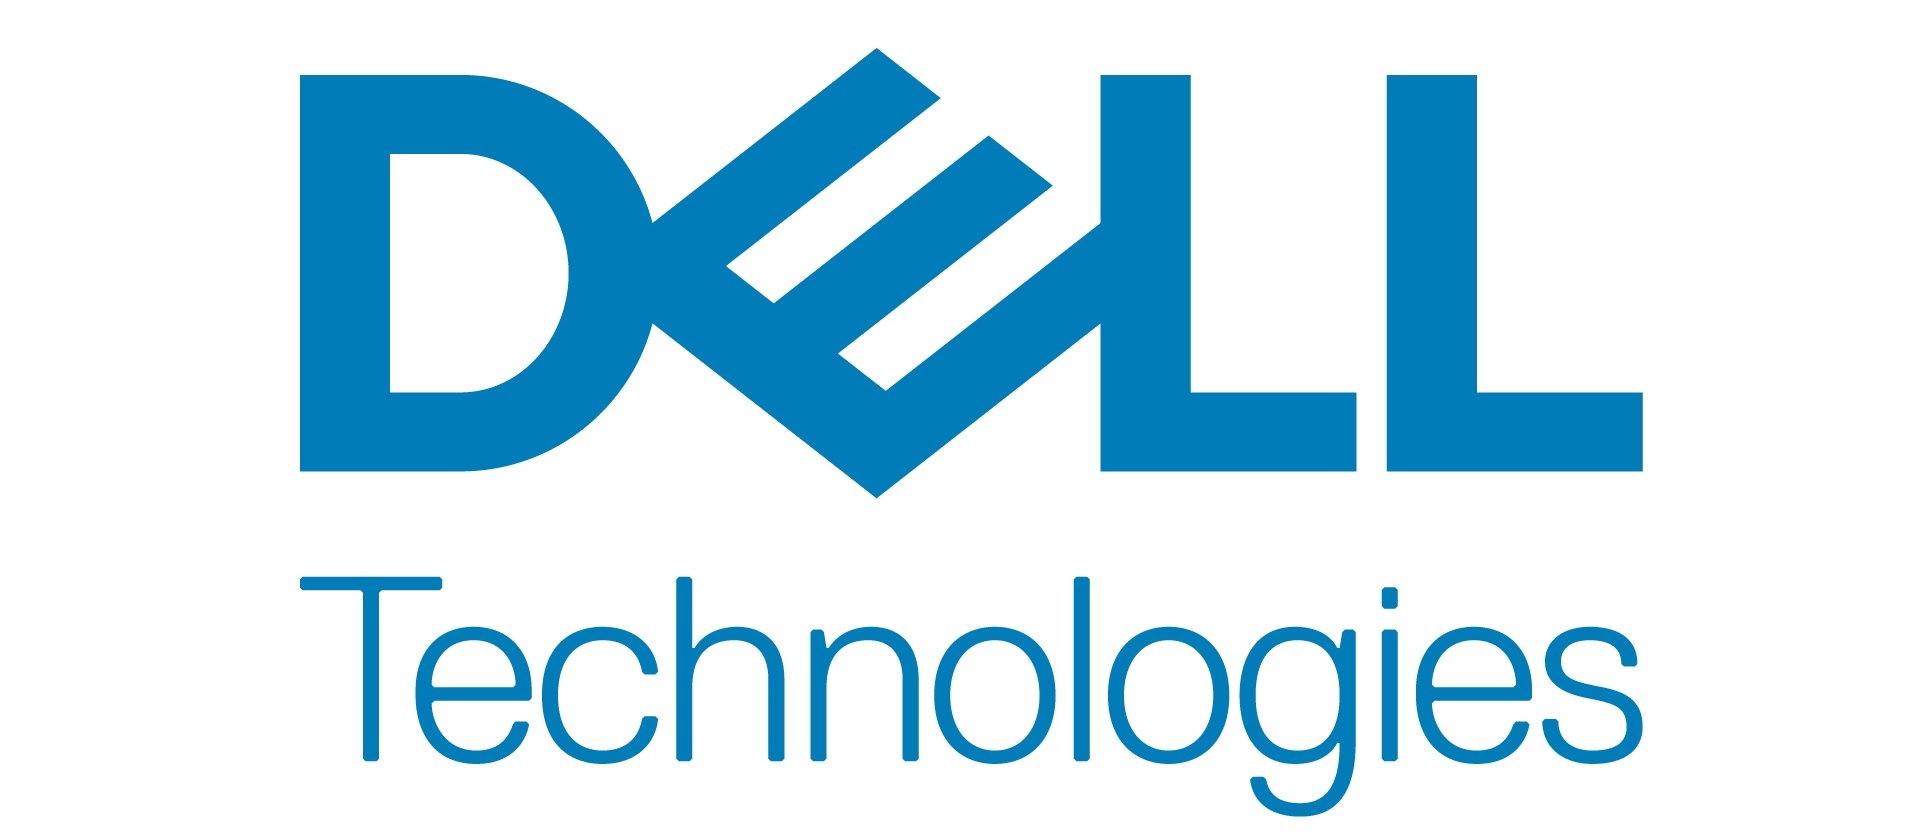 Friss kutatással jelentkezik a Dell - A szervezetek átalakulása során az ember a legfontosabb tényező